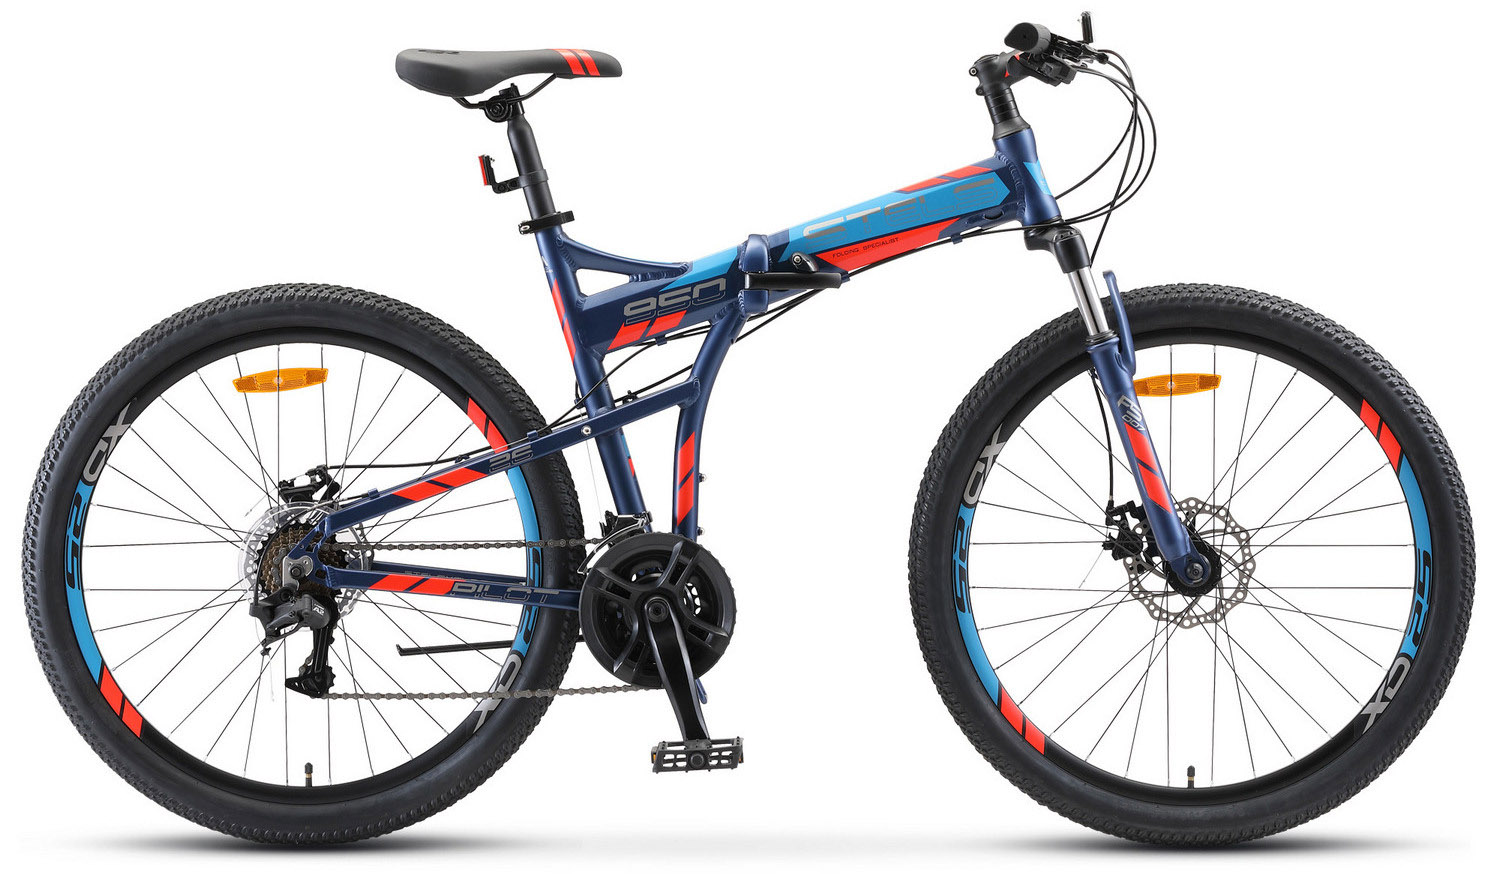  Отзывы о Складном велосипеде Stels Pilot 950 MD V011 2020